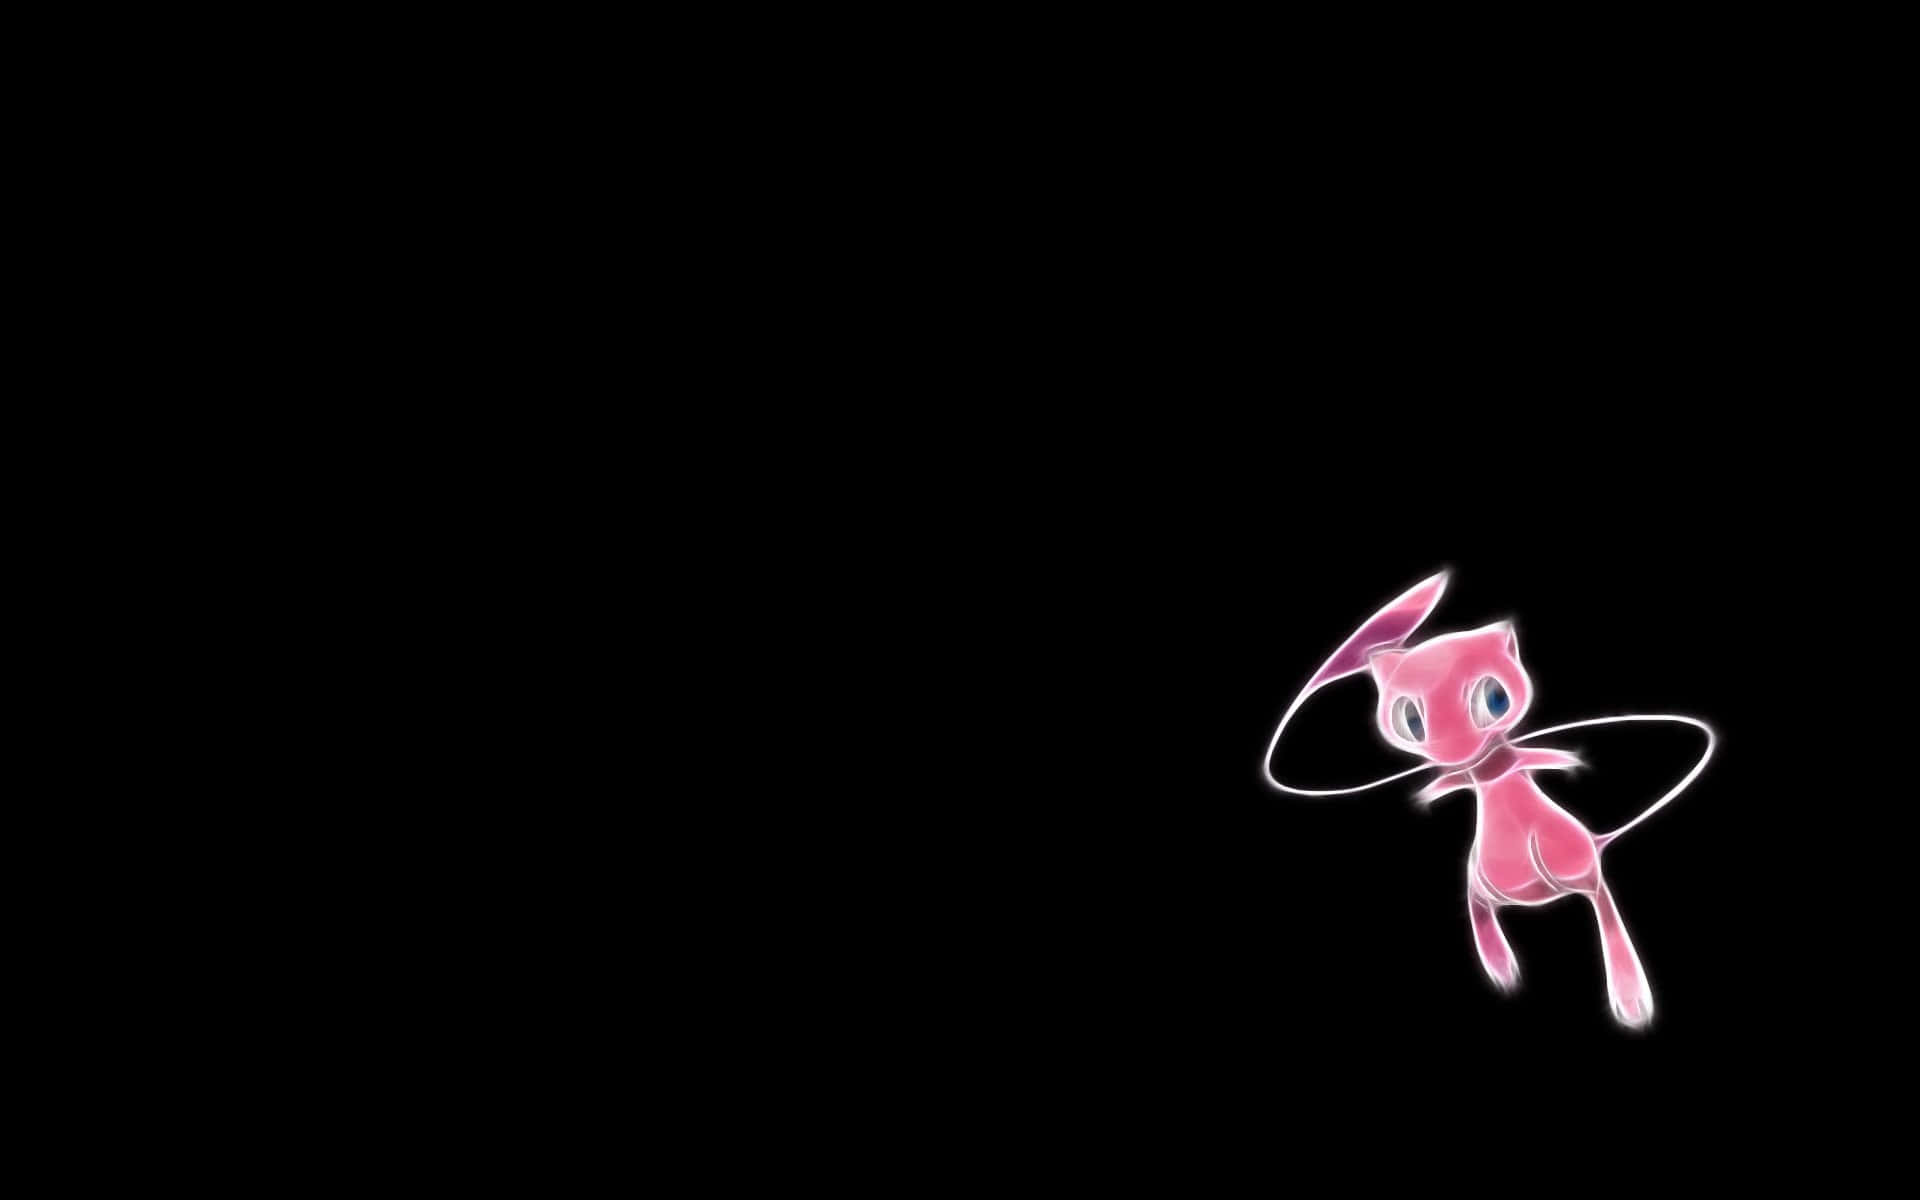 Bildpokemon Mew - Das Geheimnisvolle Märchenhafte Pokemon Wallpaper